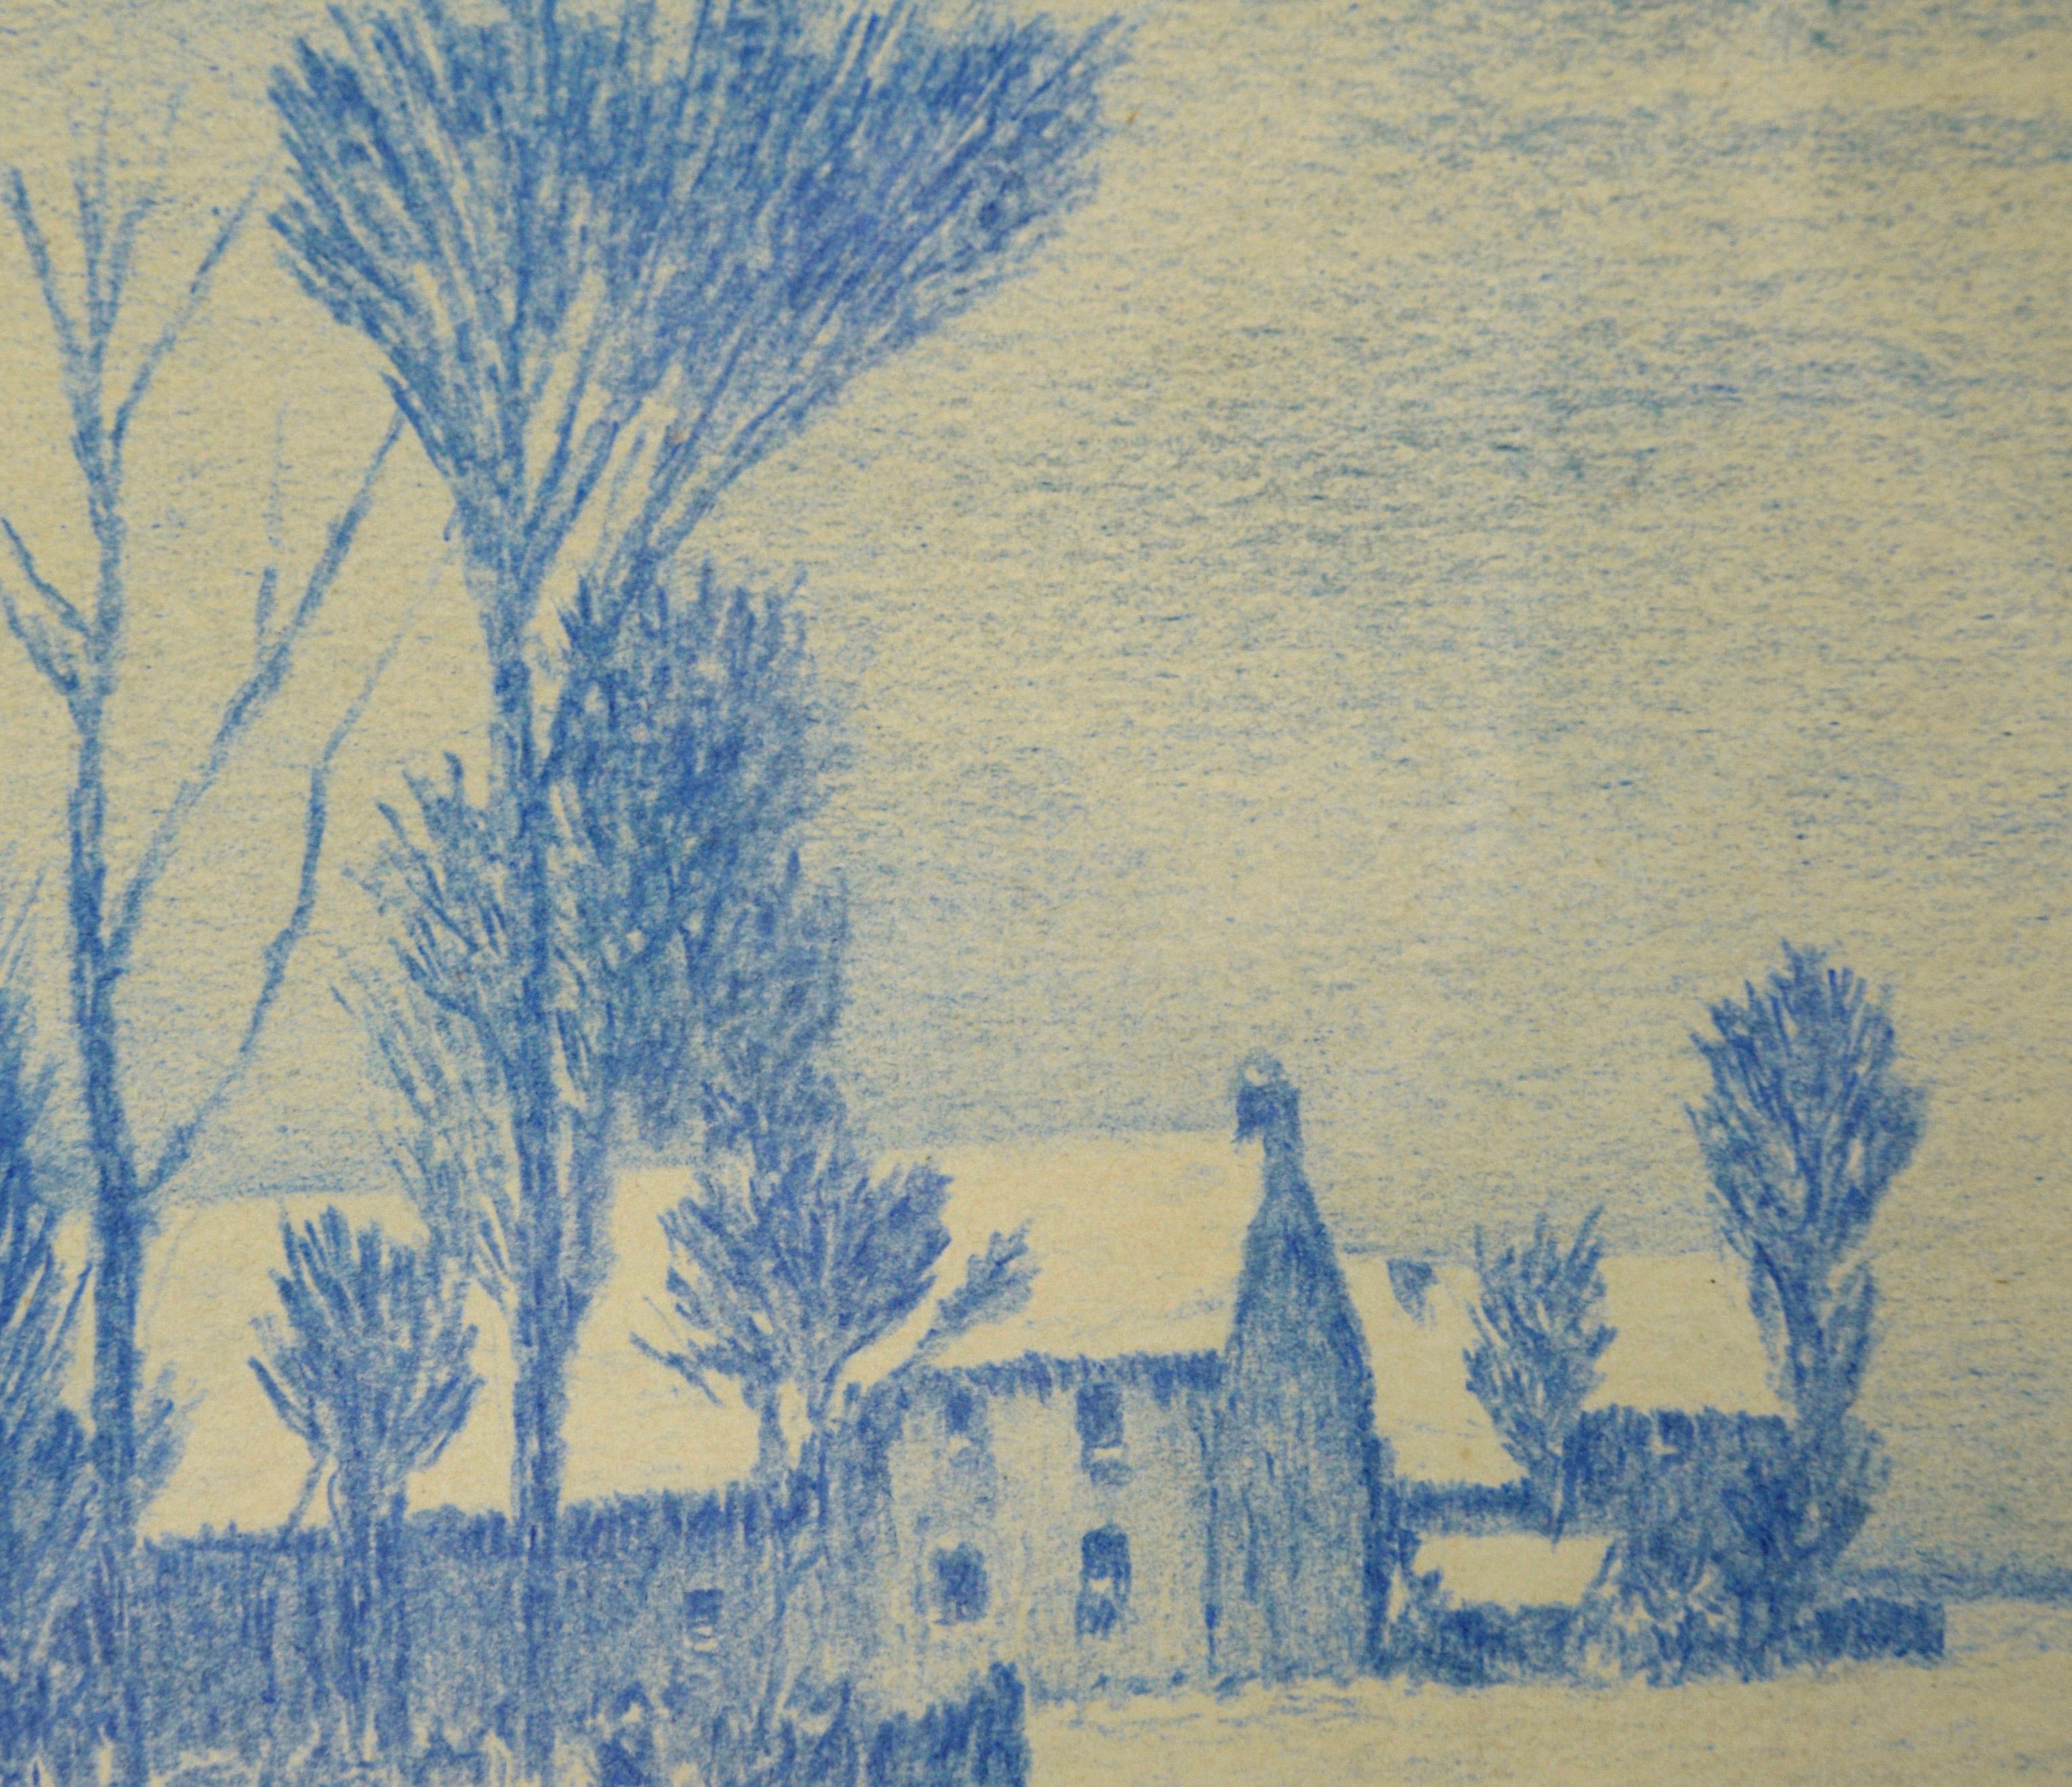 The Blue Street – Monochrome ländliche Stadtlandschaft mit Bleistift auf Papier (Impressionismus), Art, von Alle Wijtze de Somer